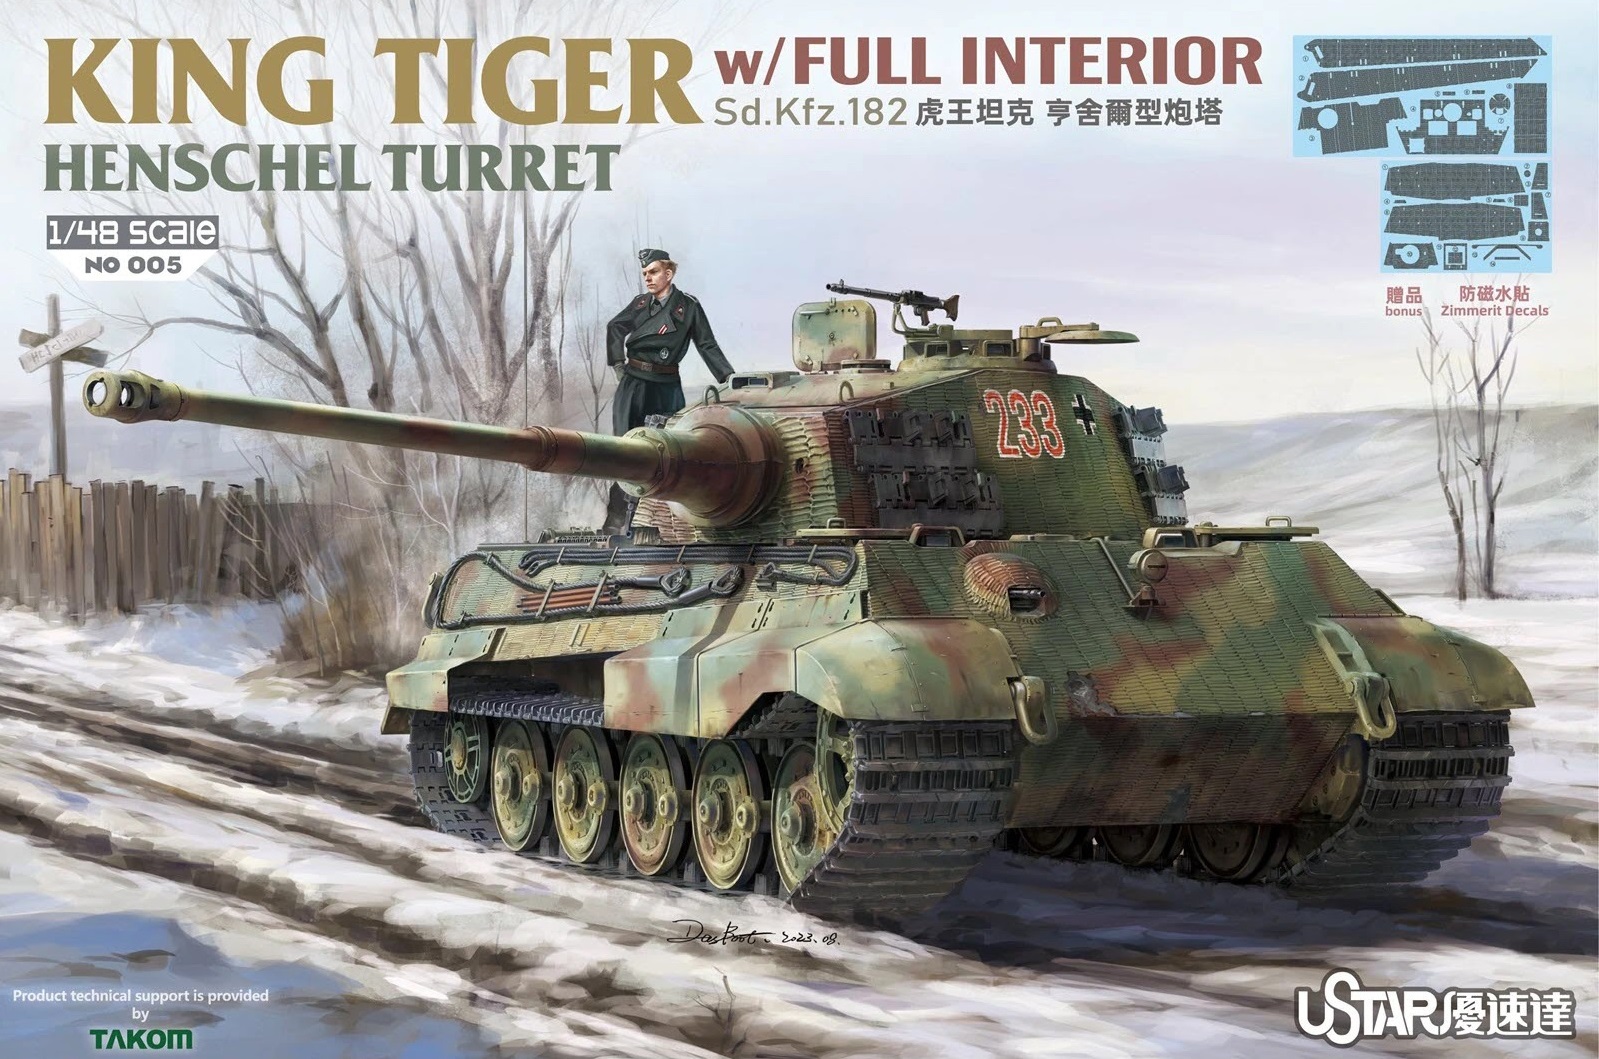 NO005  техника и вооружение  King Tiger Henschel Turret w/Full Interior  (1:48)